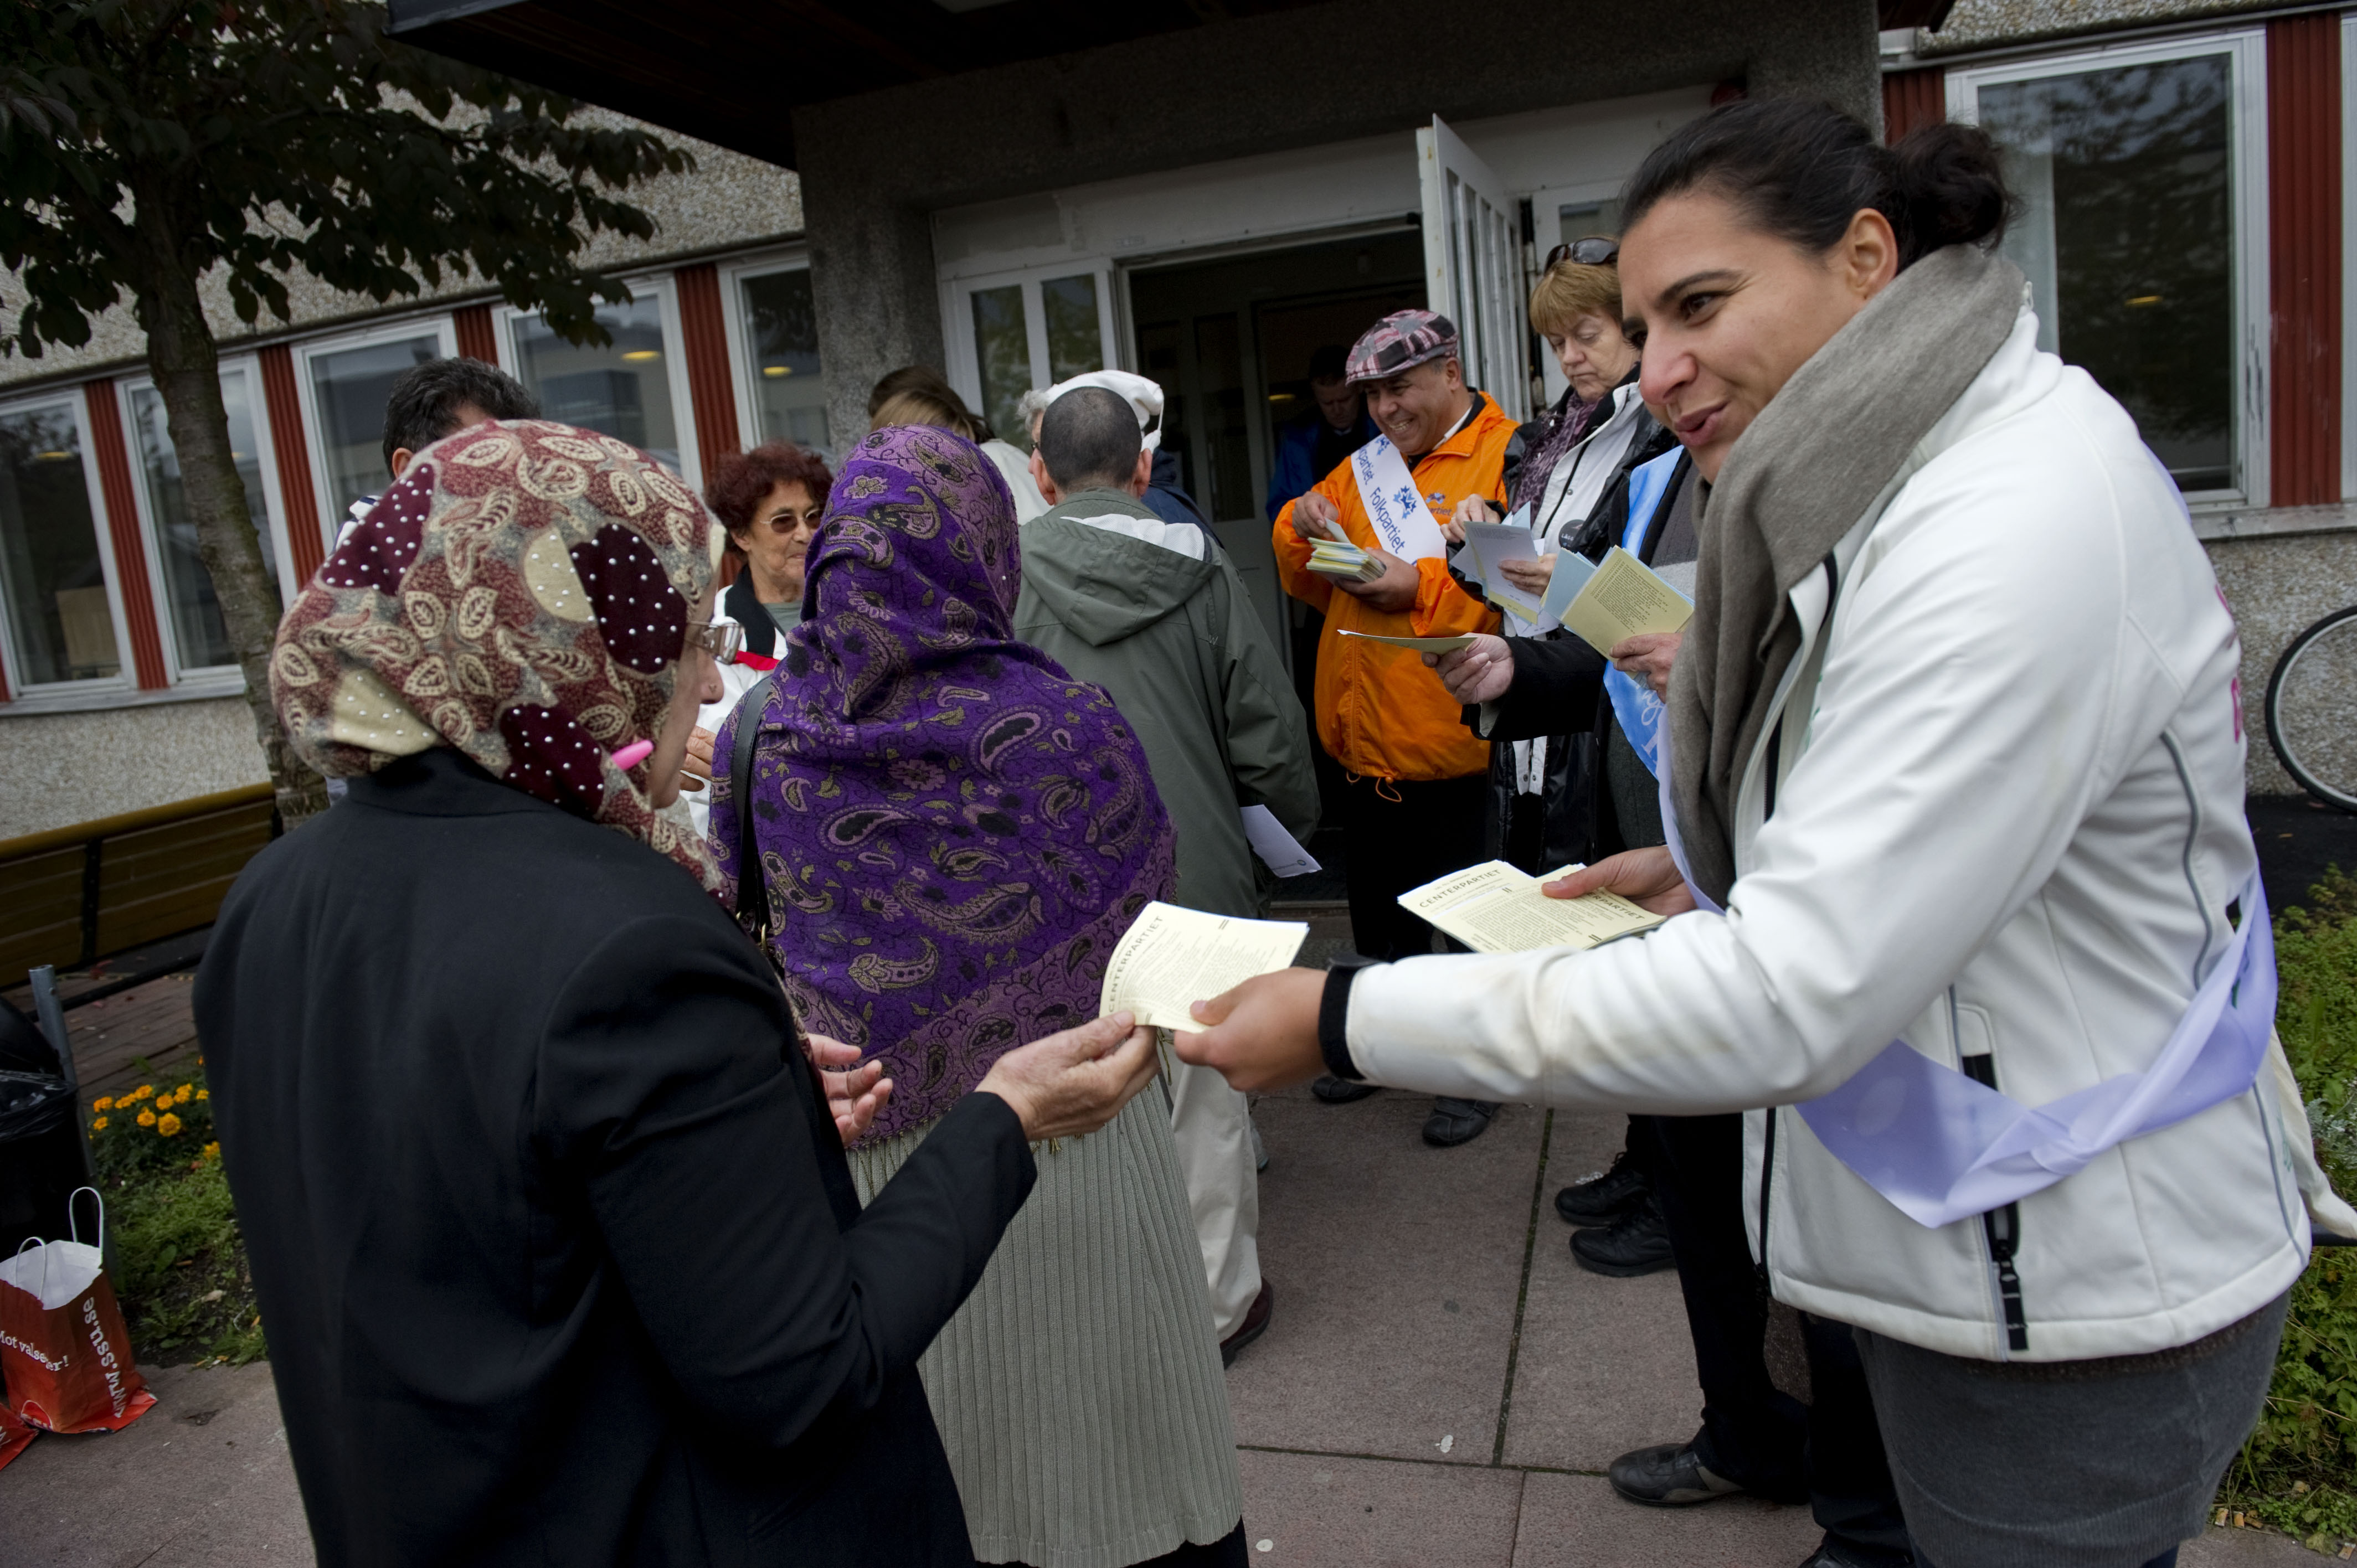 Vallokal i Skärholmens gymnasium. Abir Al-Sahlani delar ut centerpartiets valsedlar inför riksdagsvalet 2010.